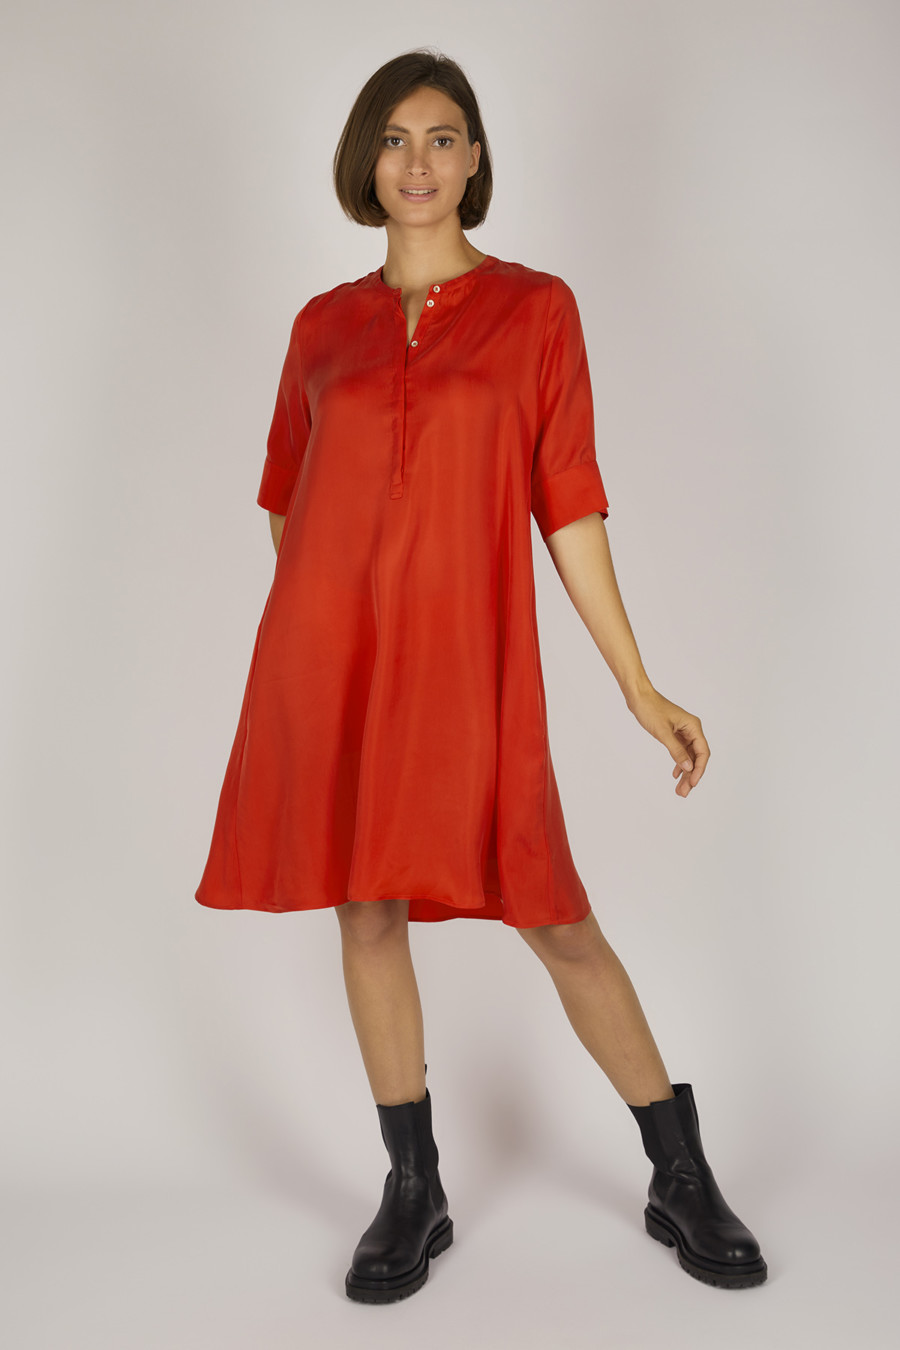 PHOEBE – Midi Kleid mit rundem Ausschnitt – Farbe: Red Hot